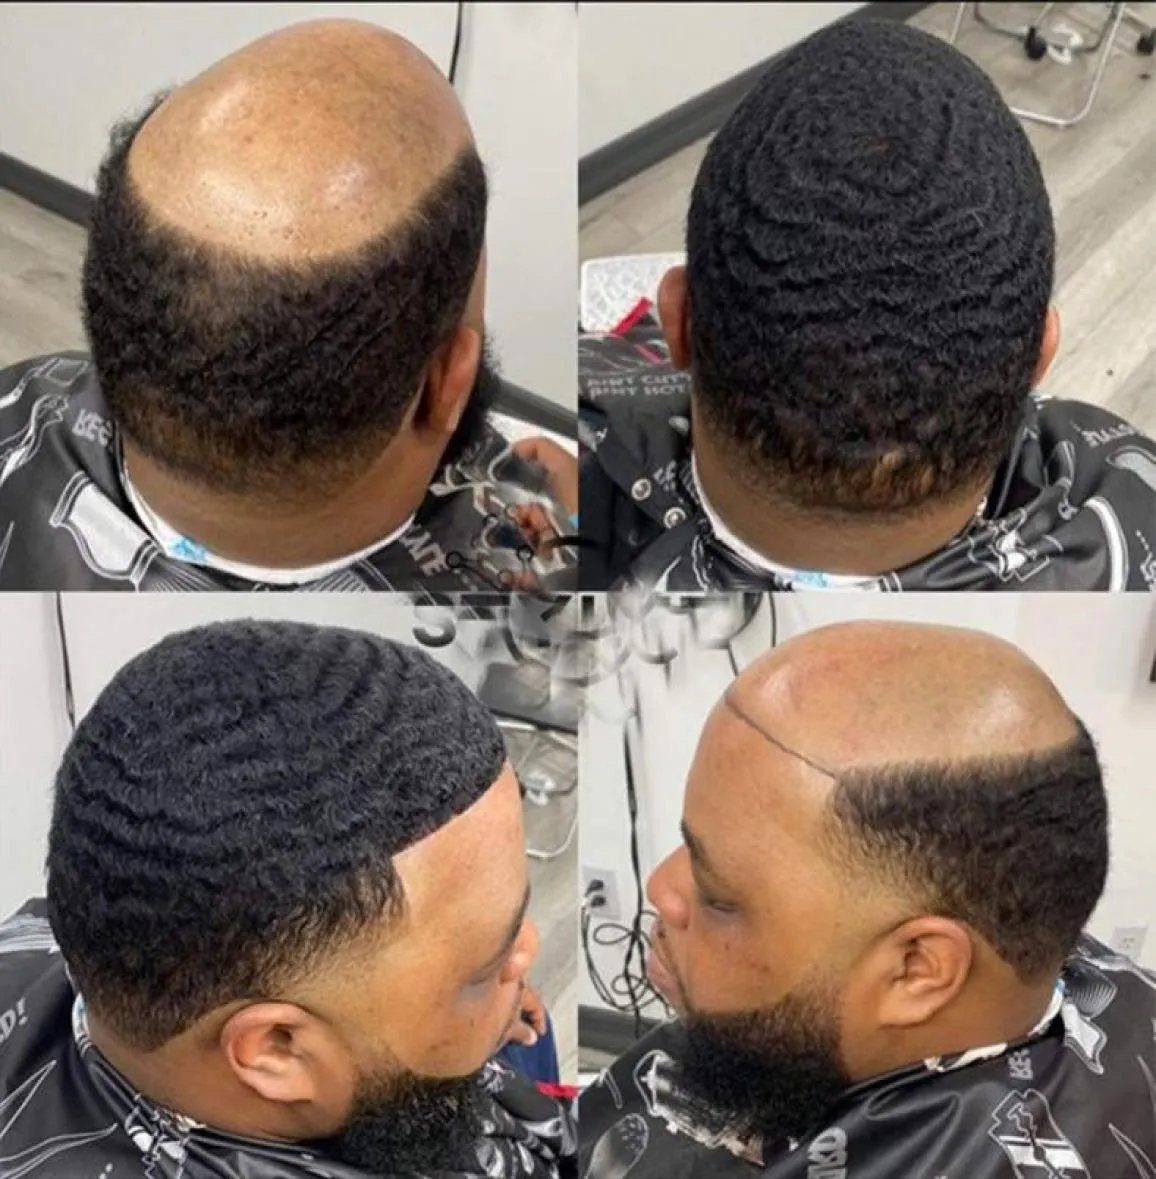 Substituição de cabelo humano indiano unidade afro wave man 8mm 10mm perucas completas à base de renda para homens negros4984130